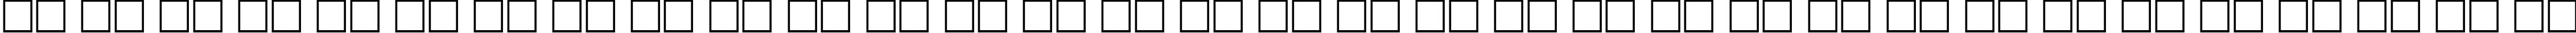 Пример написания русского алфавита шрифтом PragmaticaCTT Bold80b